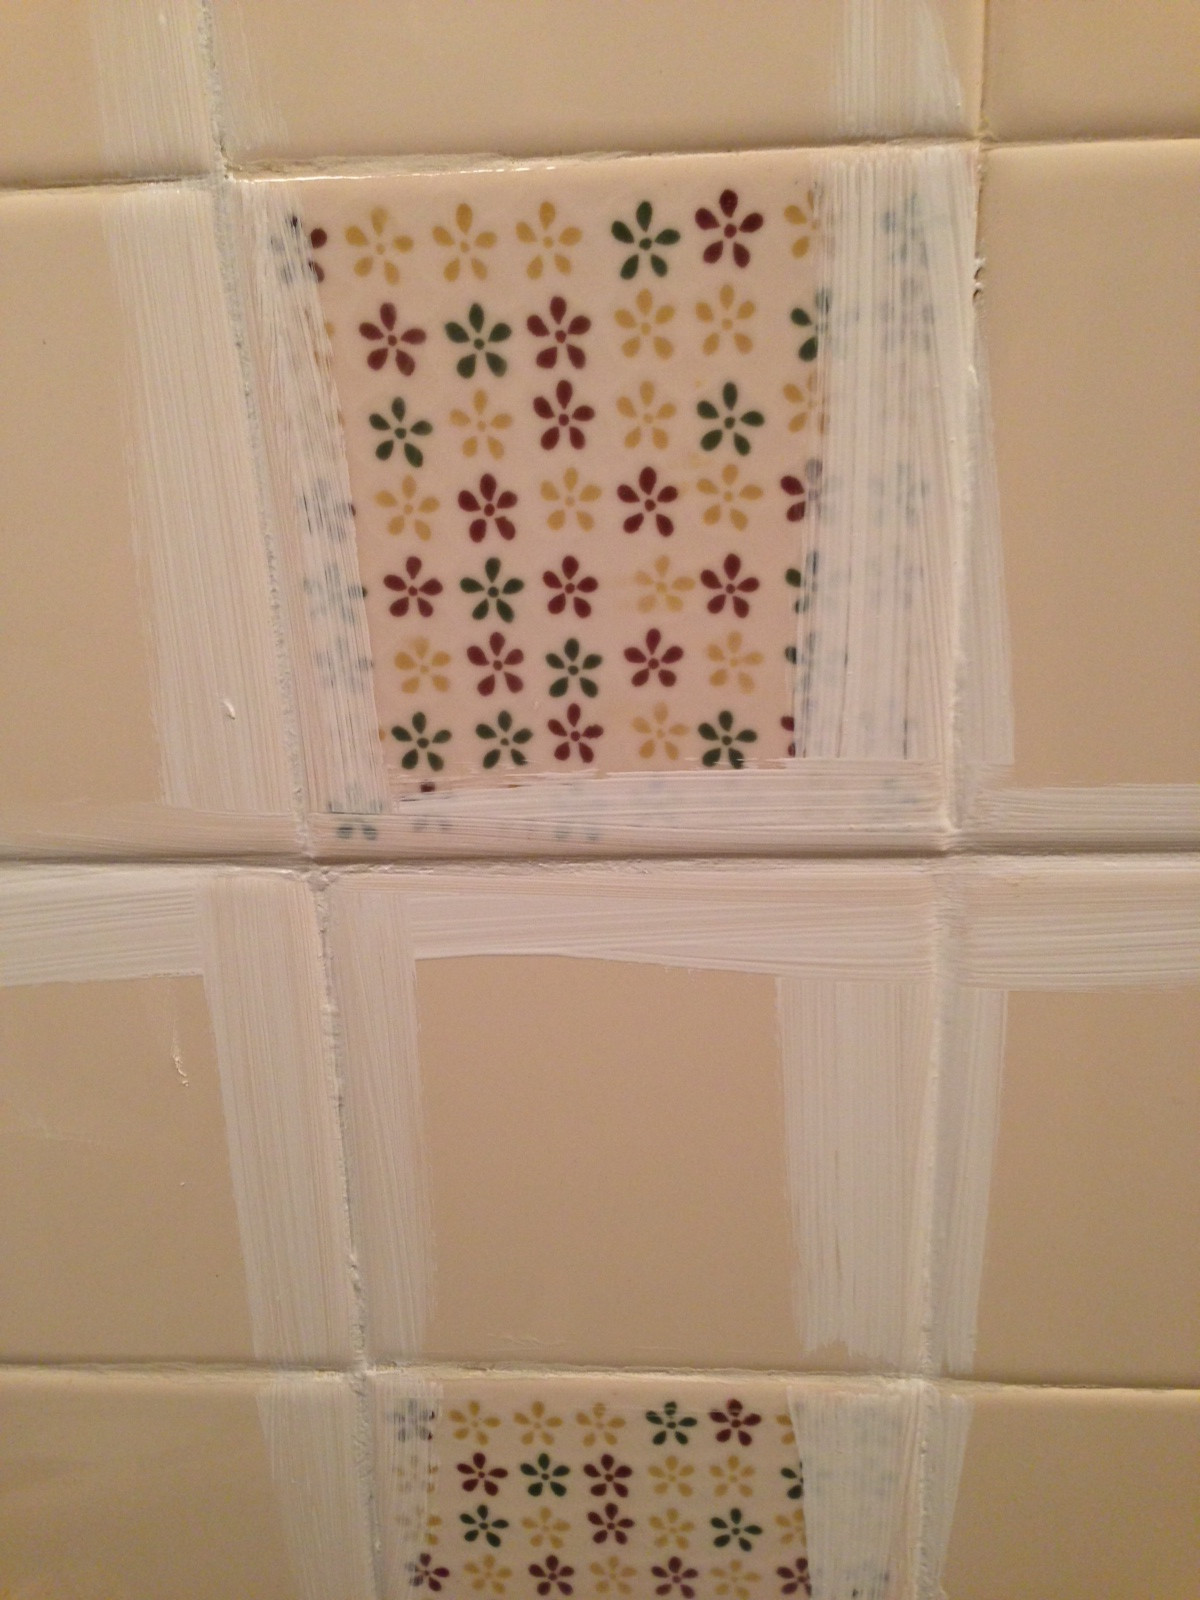 Painting Old Bathroom Tiles
 Remodelaholic